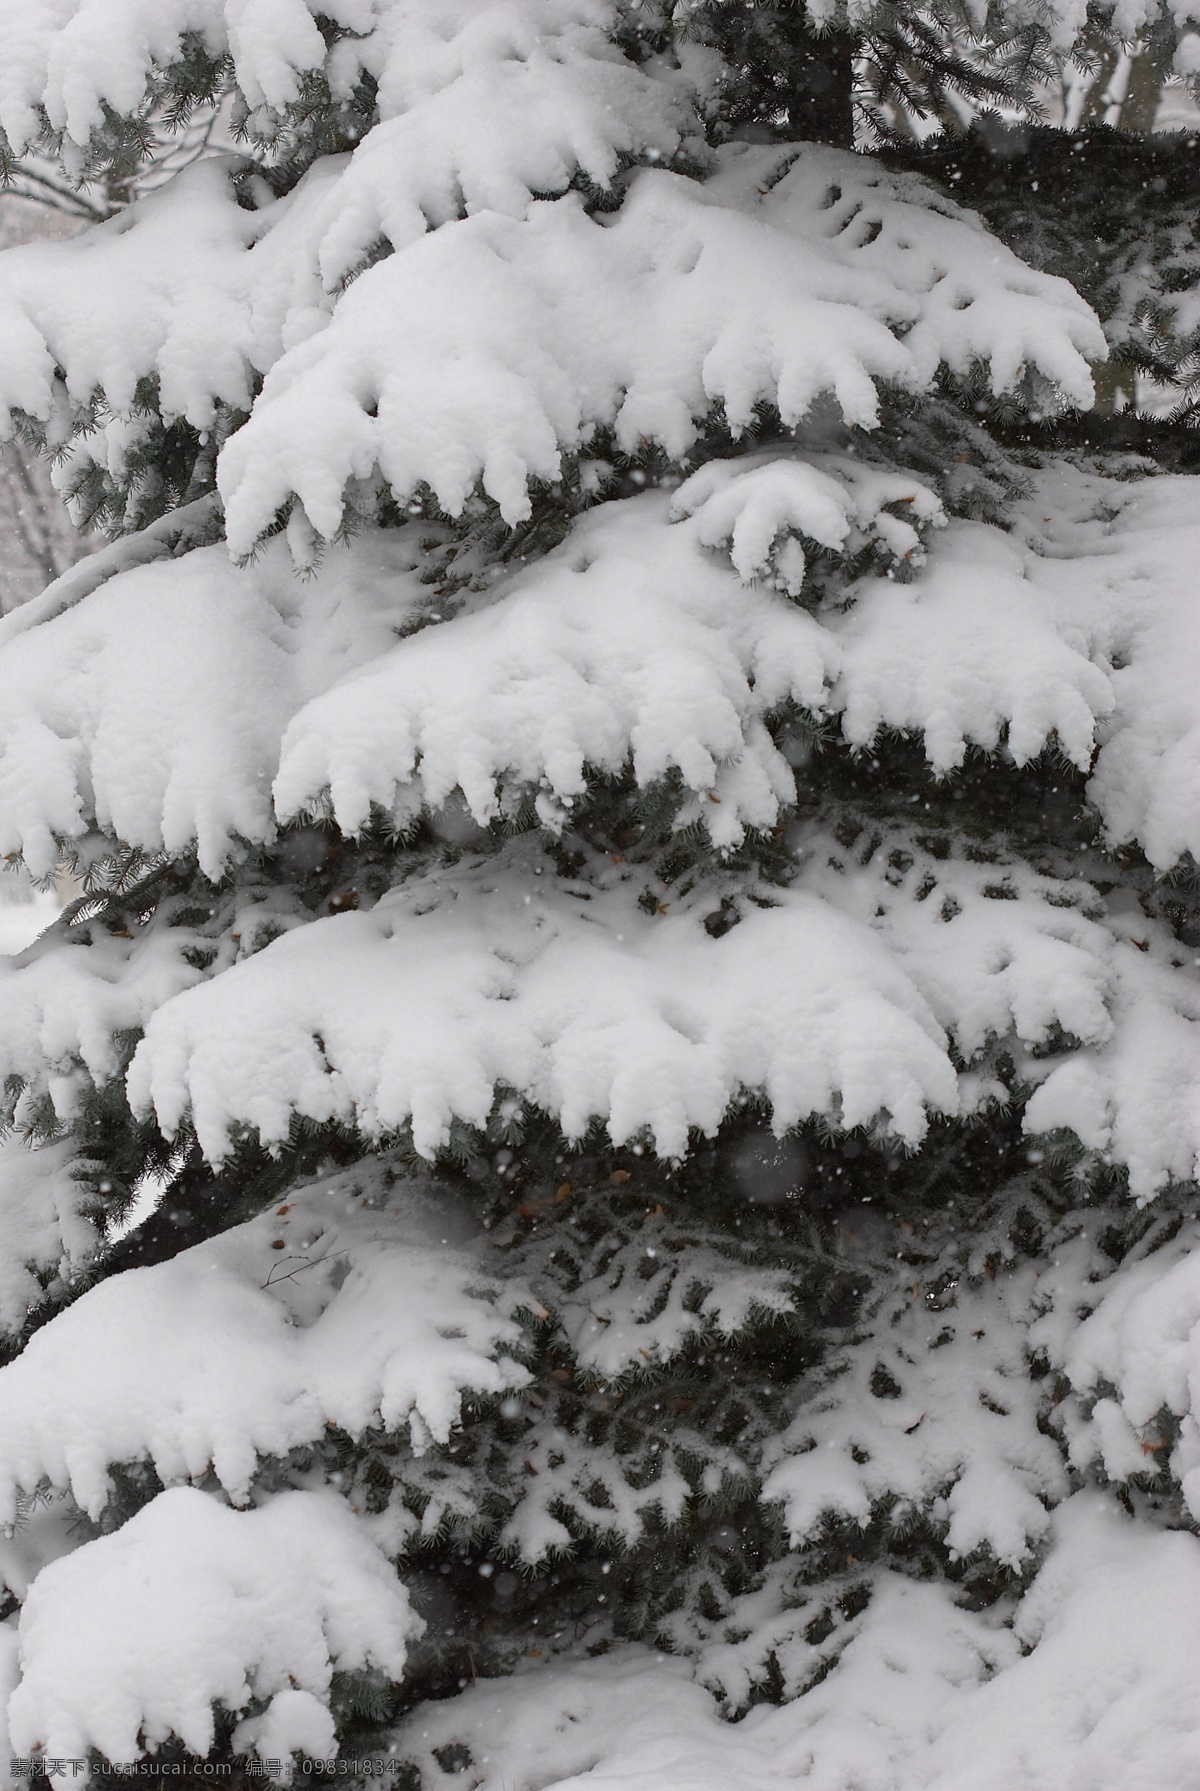 树枝 上 白雪 冬天雪景 冬季 美丽风景 美丽雪景 积雪 风景摄影 树木 树林 树枝上的白雪 树叶 山水风景 风景图片